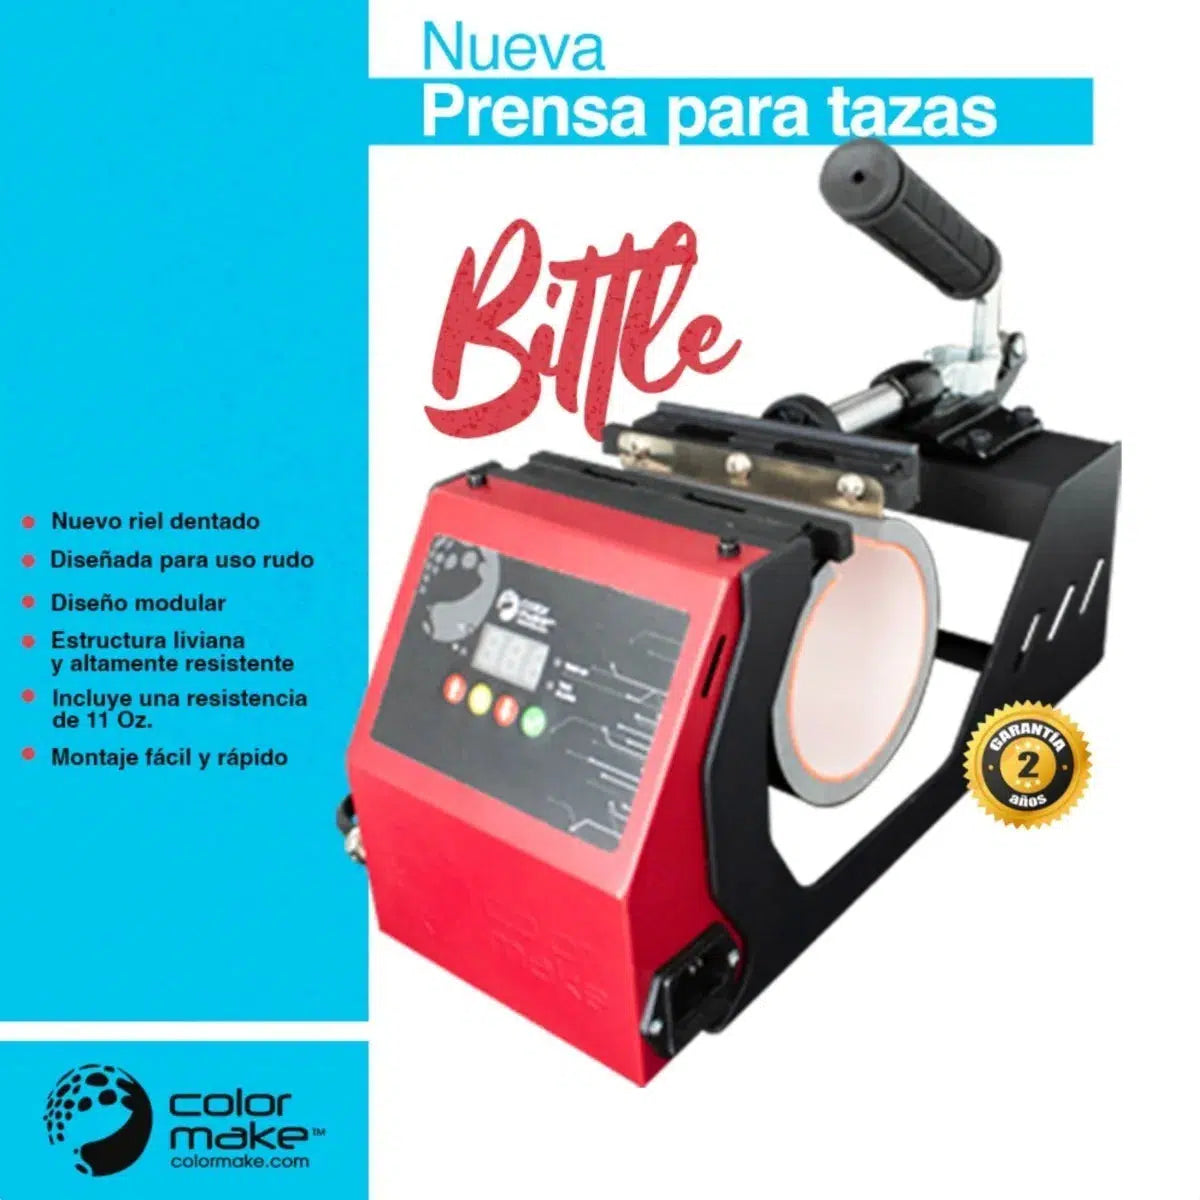 Prensa Para Sublimar Tazas Color Make Bittle 2 en 1 Resistencia 11 Oz y Tequilero - Papira.com.mx